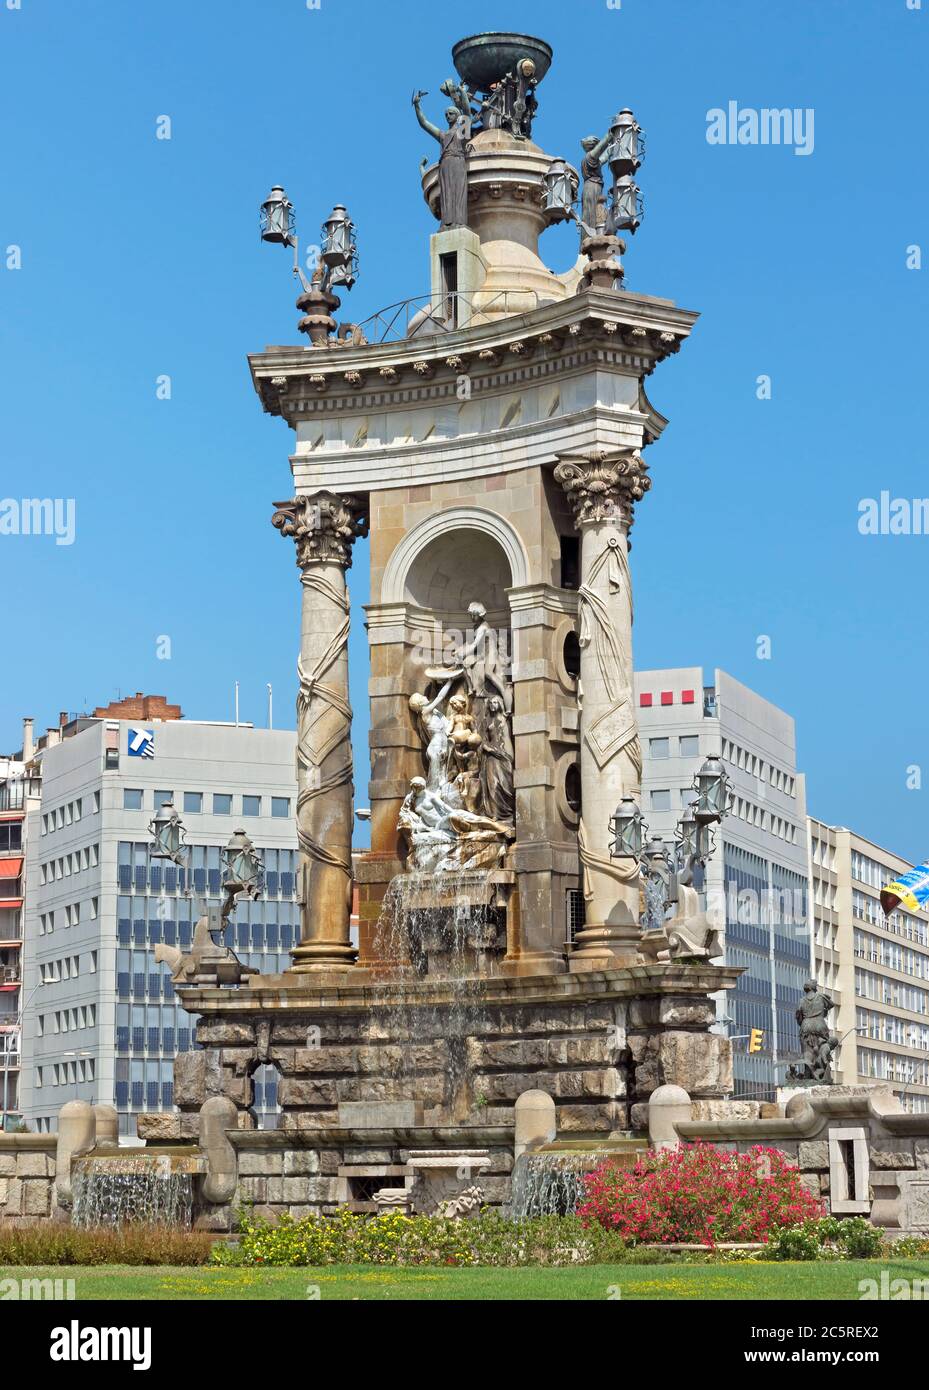 BARCELLONA, SPAGNA - 8 LUGLIO 2015: La fontana al centro della Placa De Espanya, una delle piazze più importanti di Barcellona, costruita in occasione Foto Stock